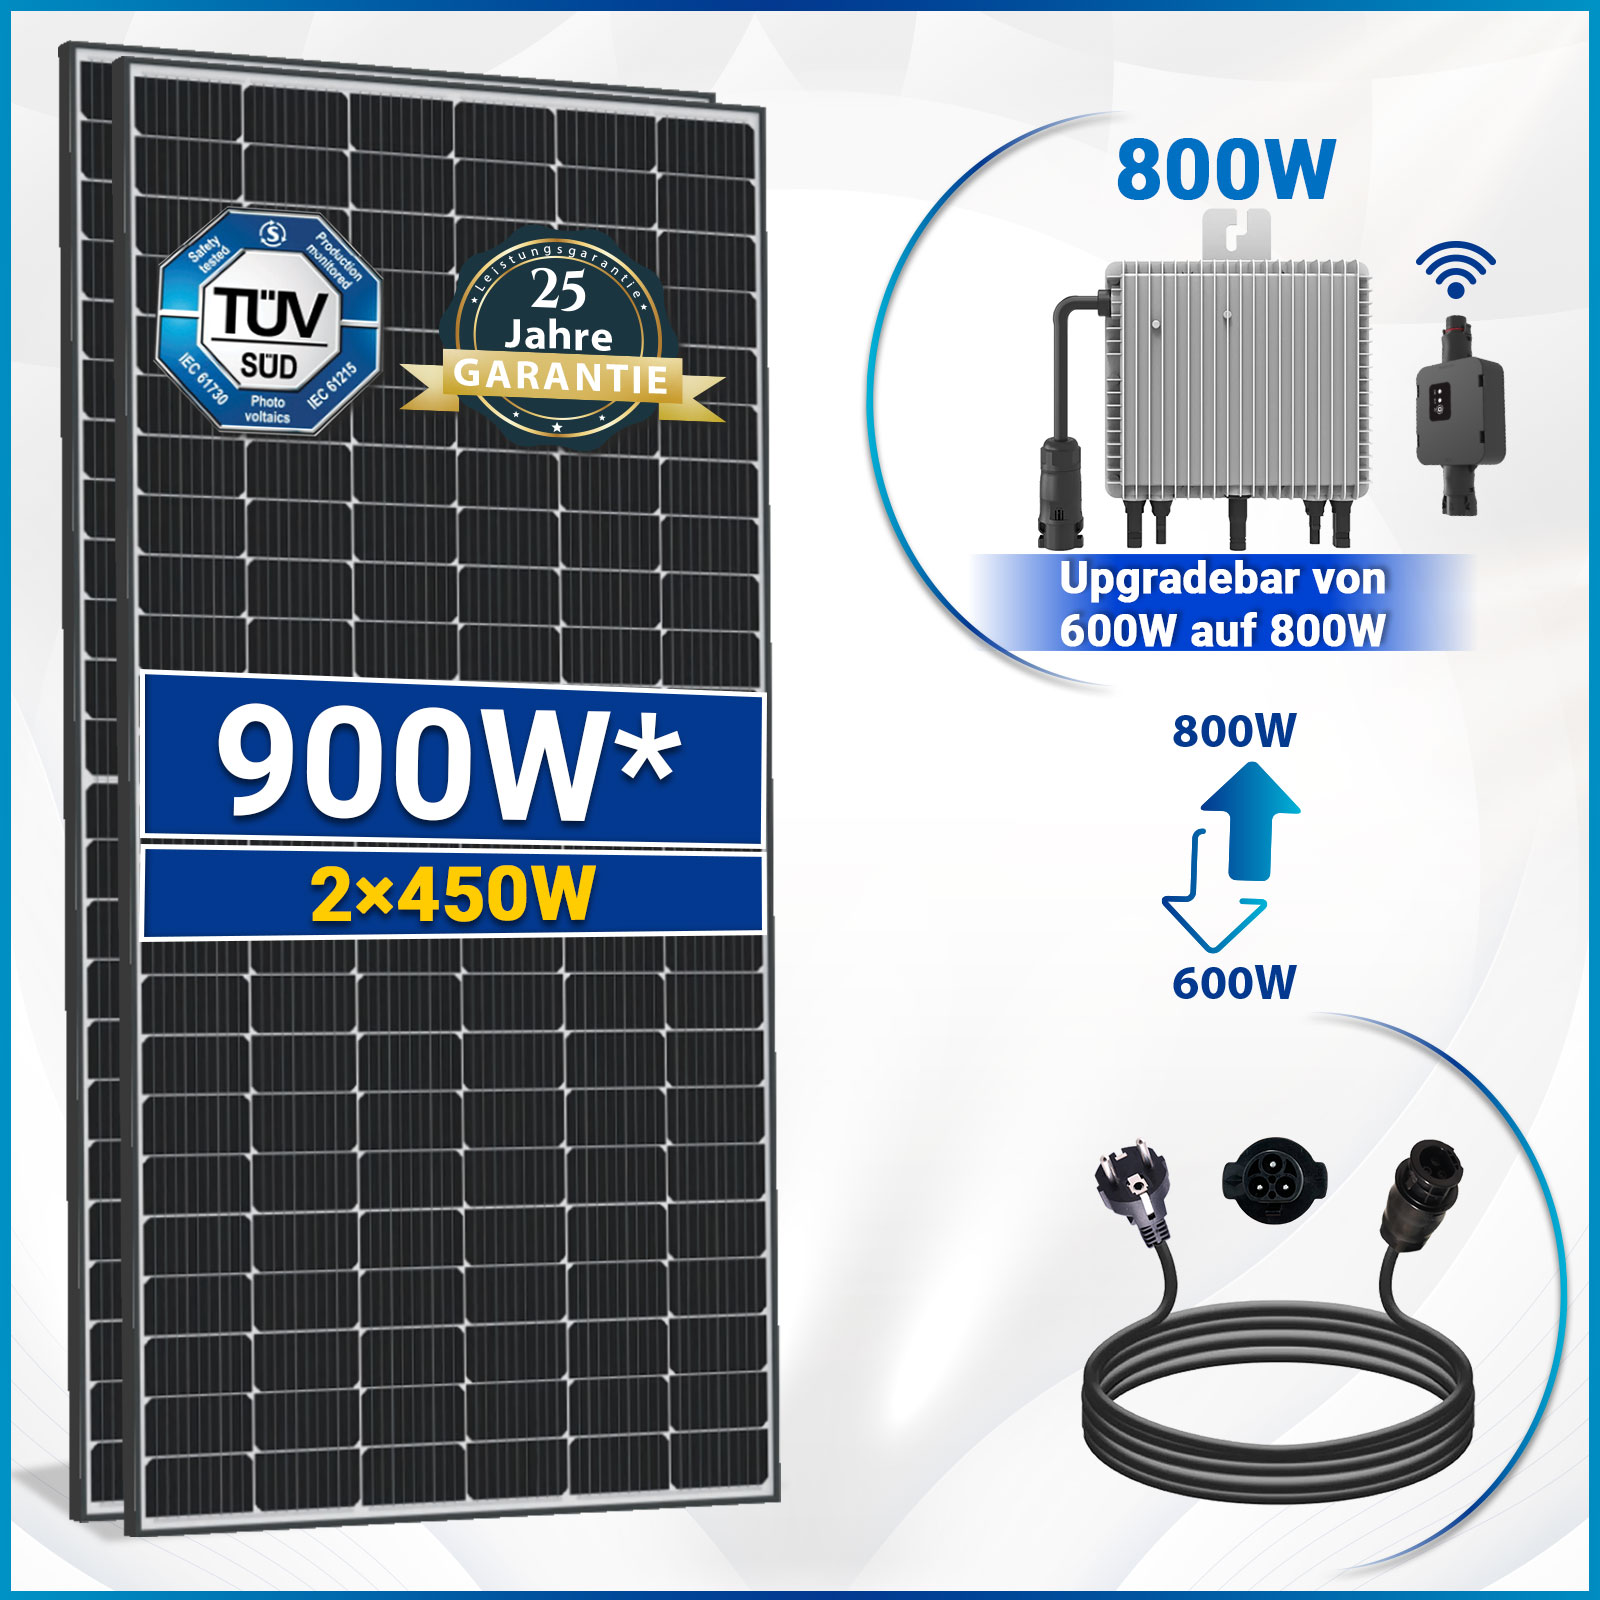 900W Balkonkraftwerk inkl. 450W Solarmodule, Neu Generation